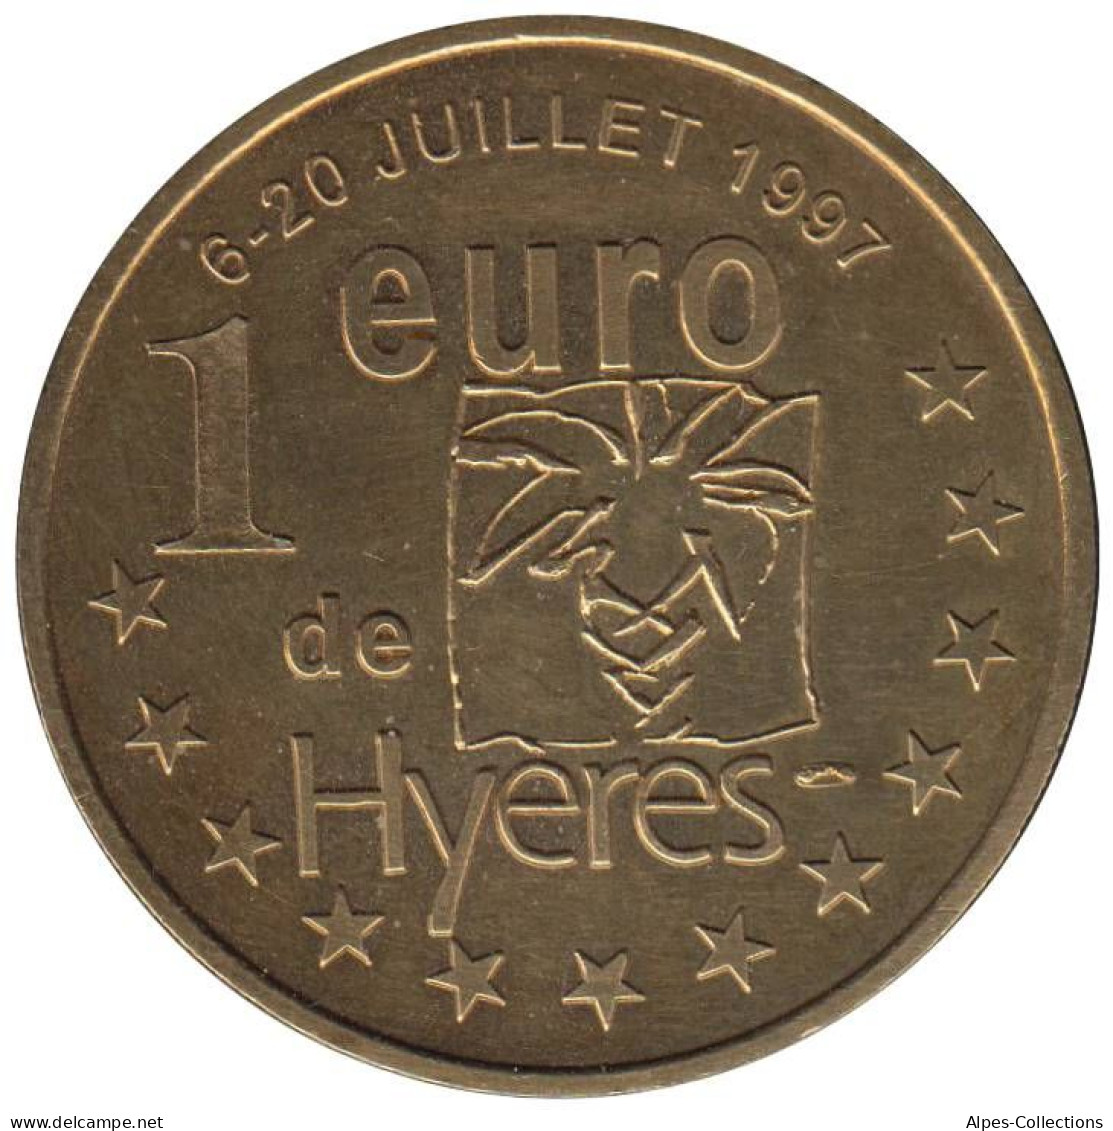 HYERES - EU0010.1 - 1 EURO DES VILLES - Réf: T295 - 1997 - Euro Delle Città